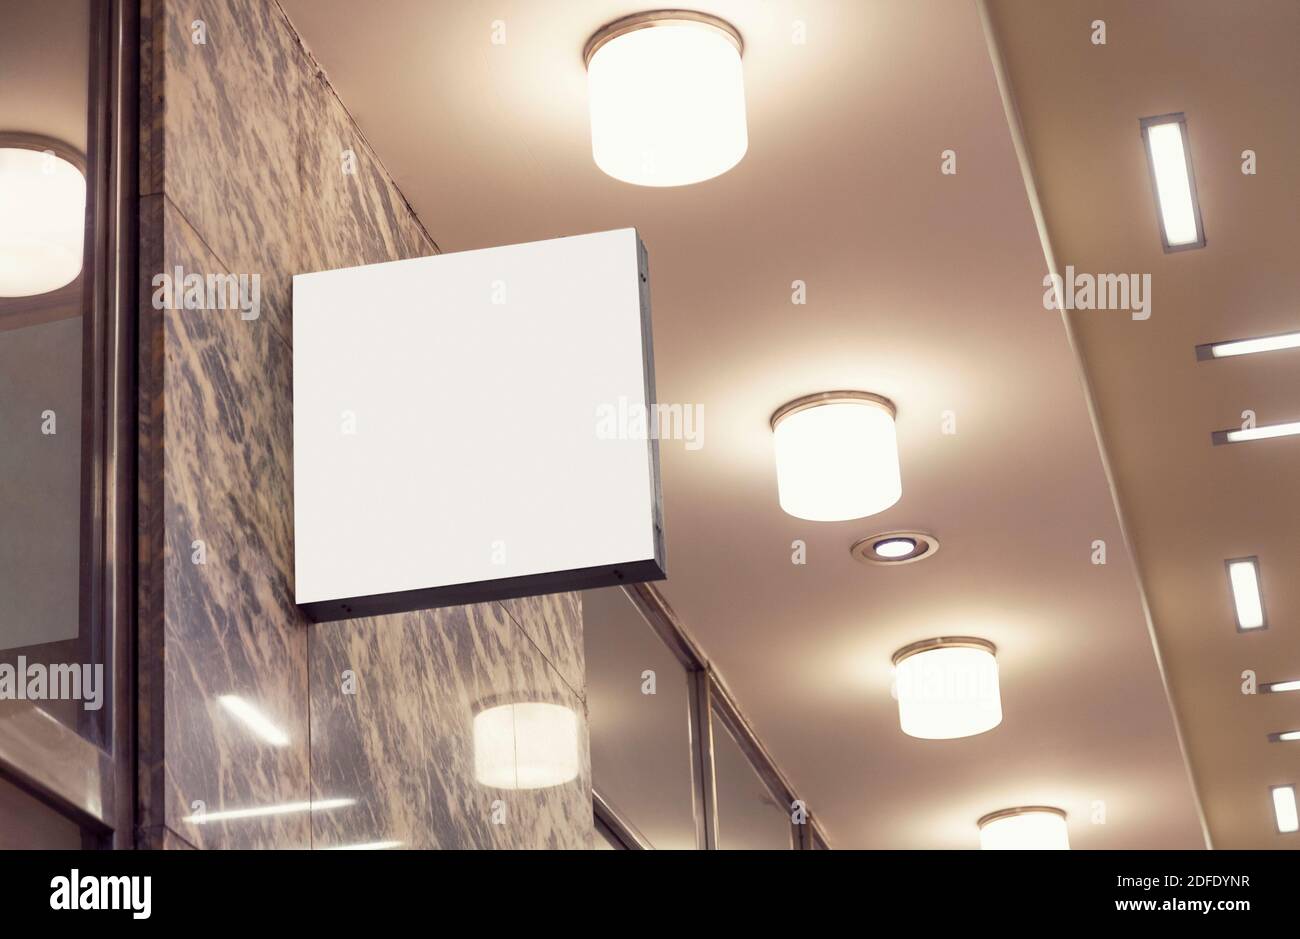 Blank hängende Wandschild, quadratische modernen Stil Outdoor-Signage mit Kopieplatz, Firmenzeichen, um Logo oder Text hinzuzufügen Stockfoto